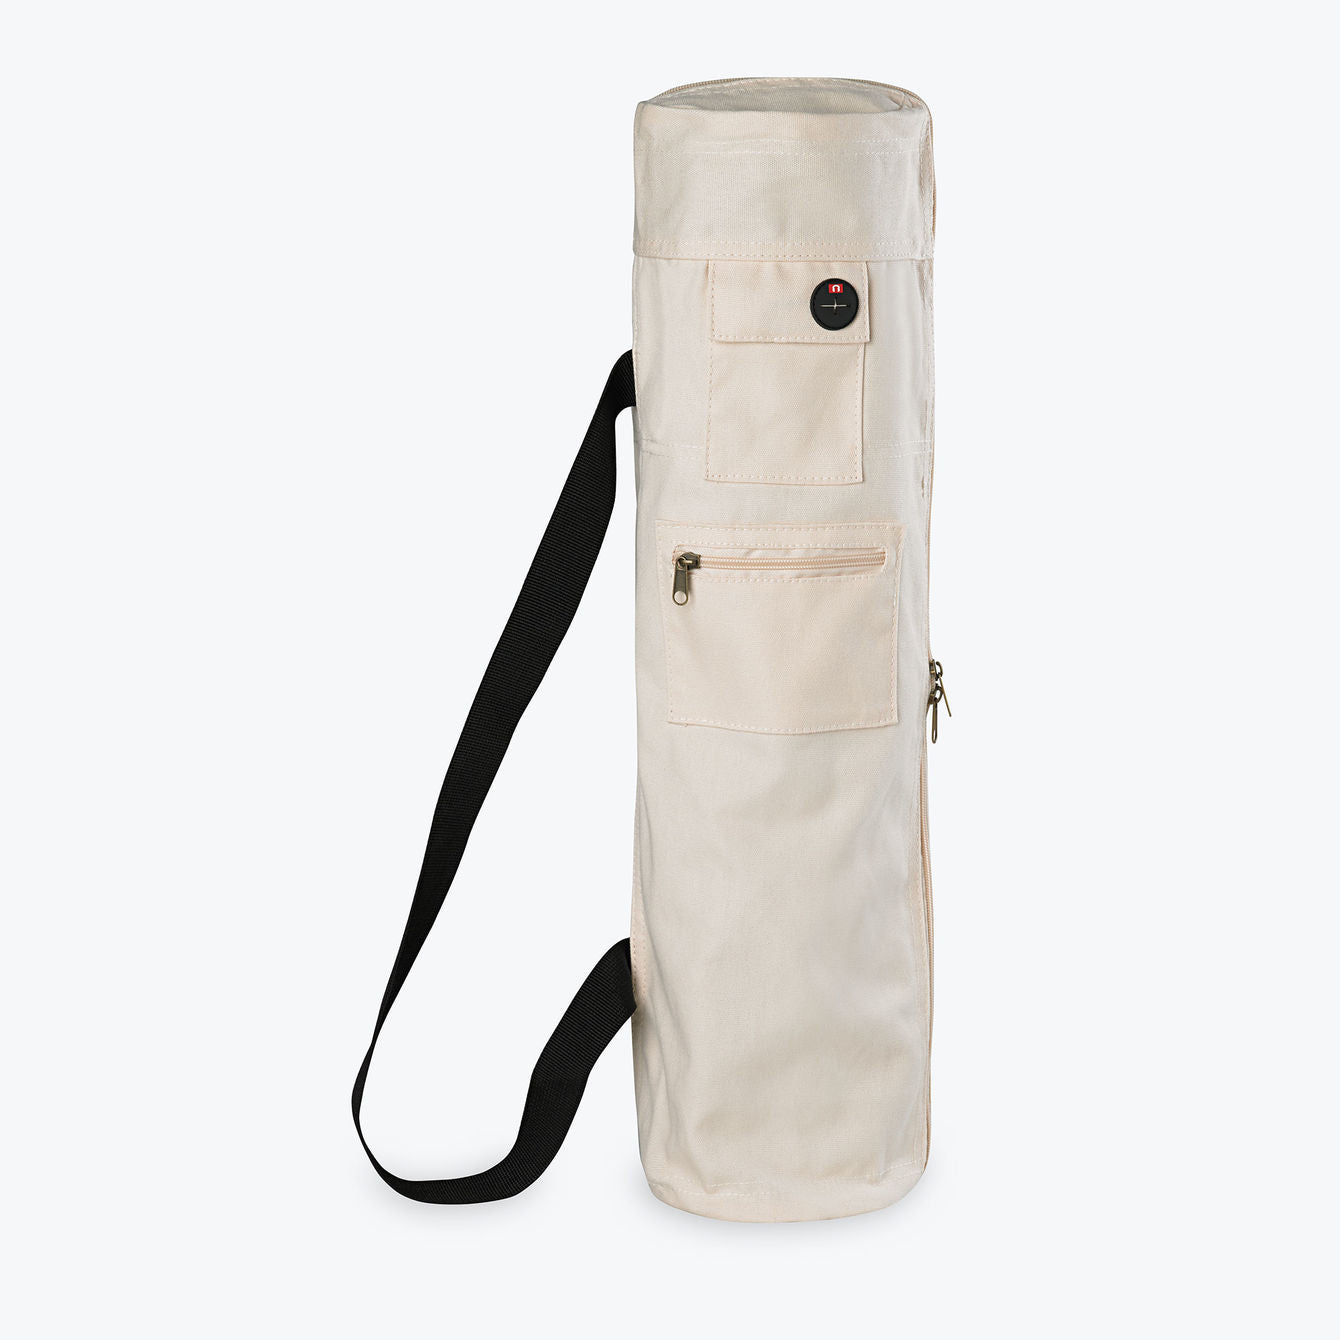 Damask Printed Yoga Mat Bag - Turbo Theme Portland